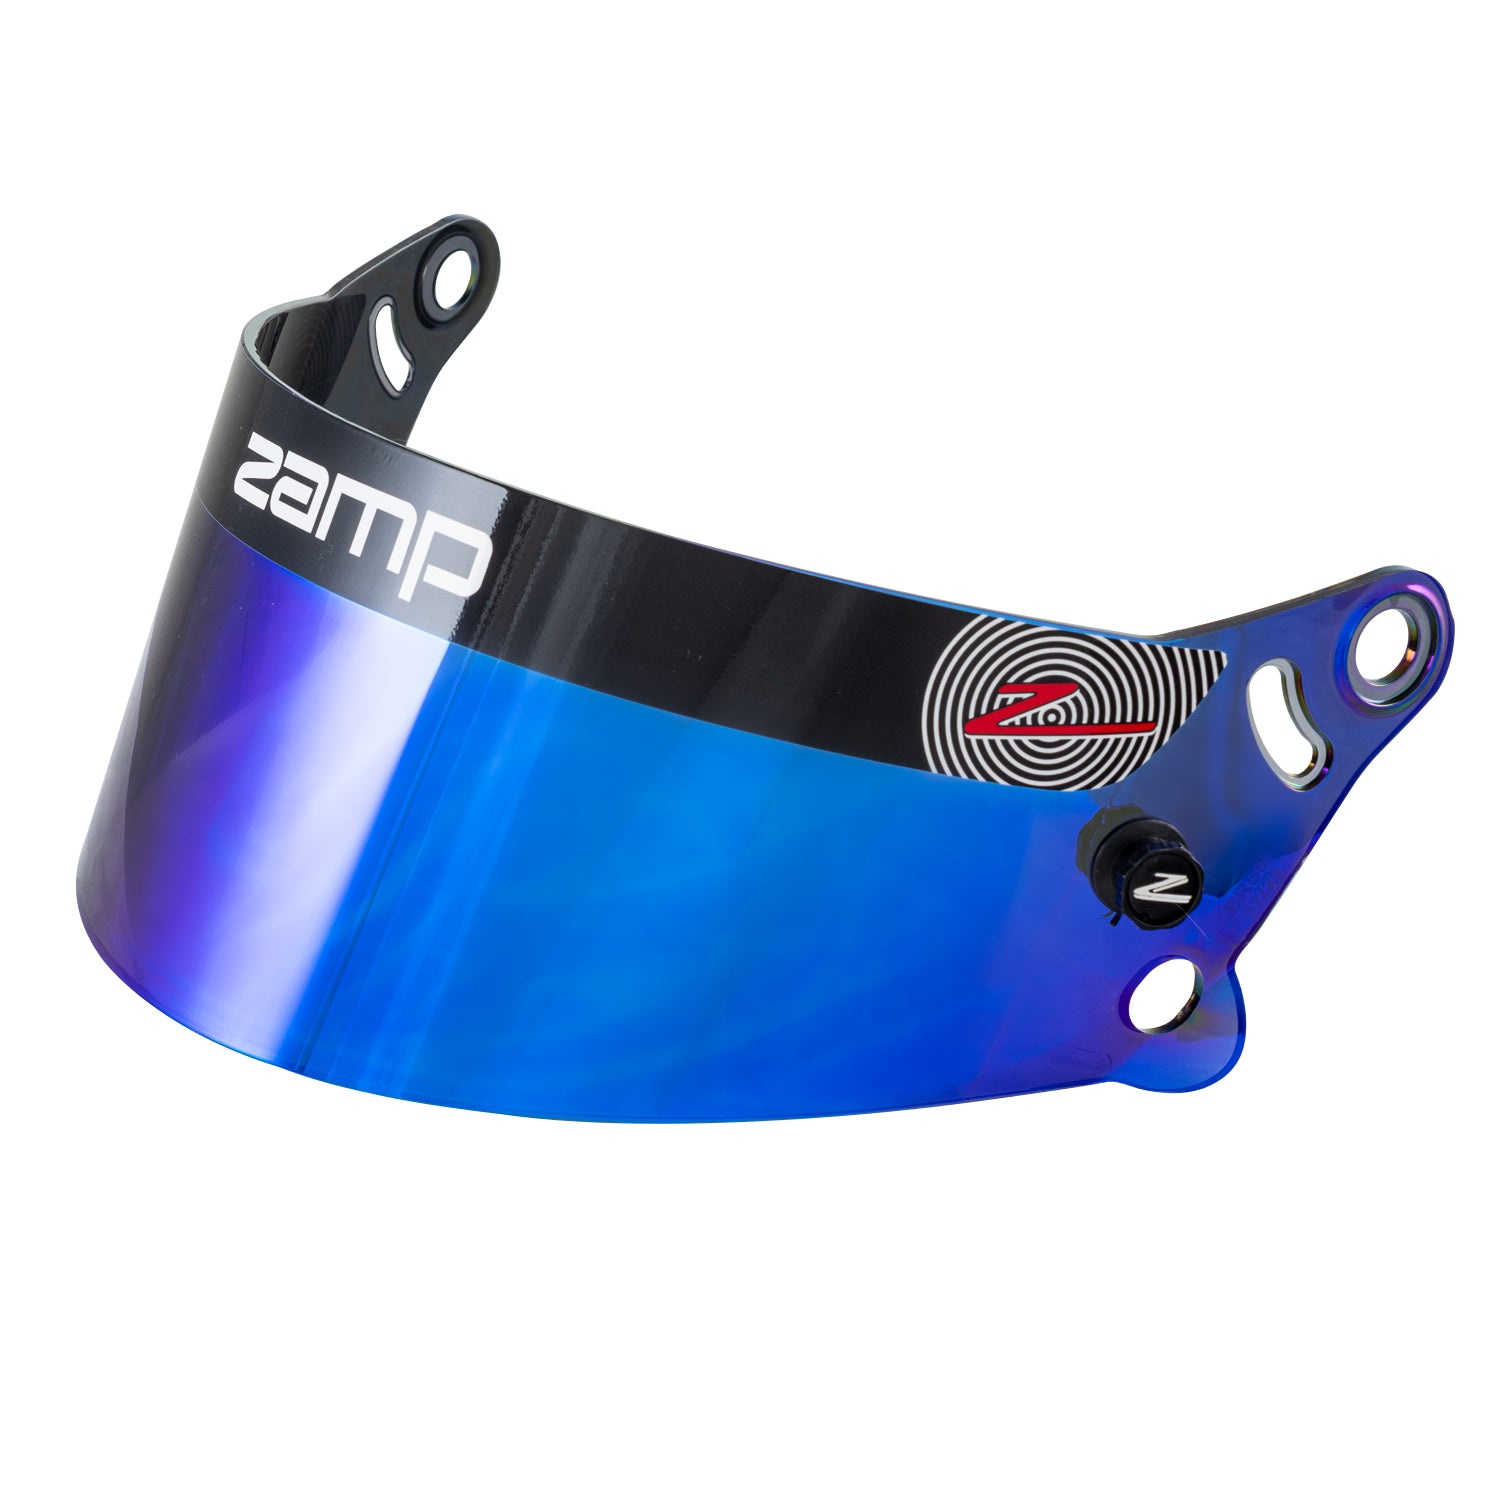 Zamp Z-20 FIA Series Prism Shields, 5 options